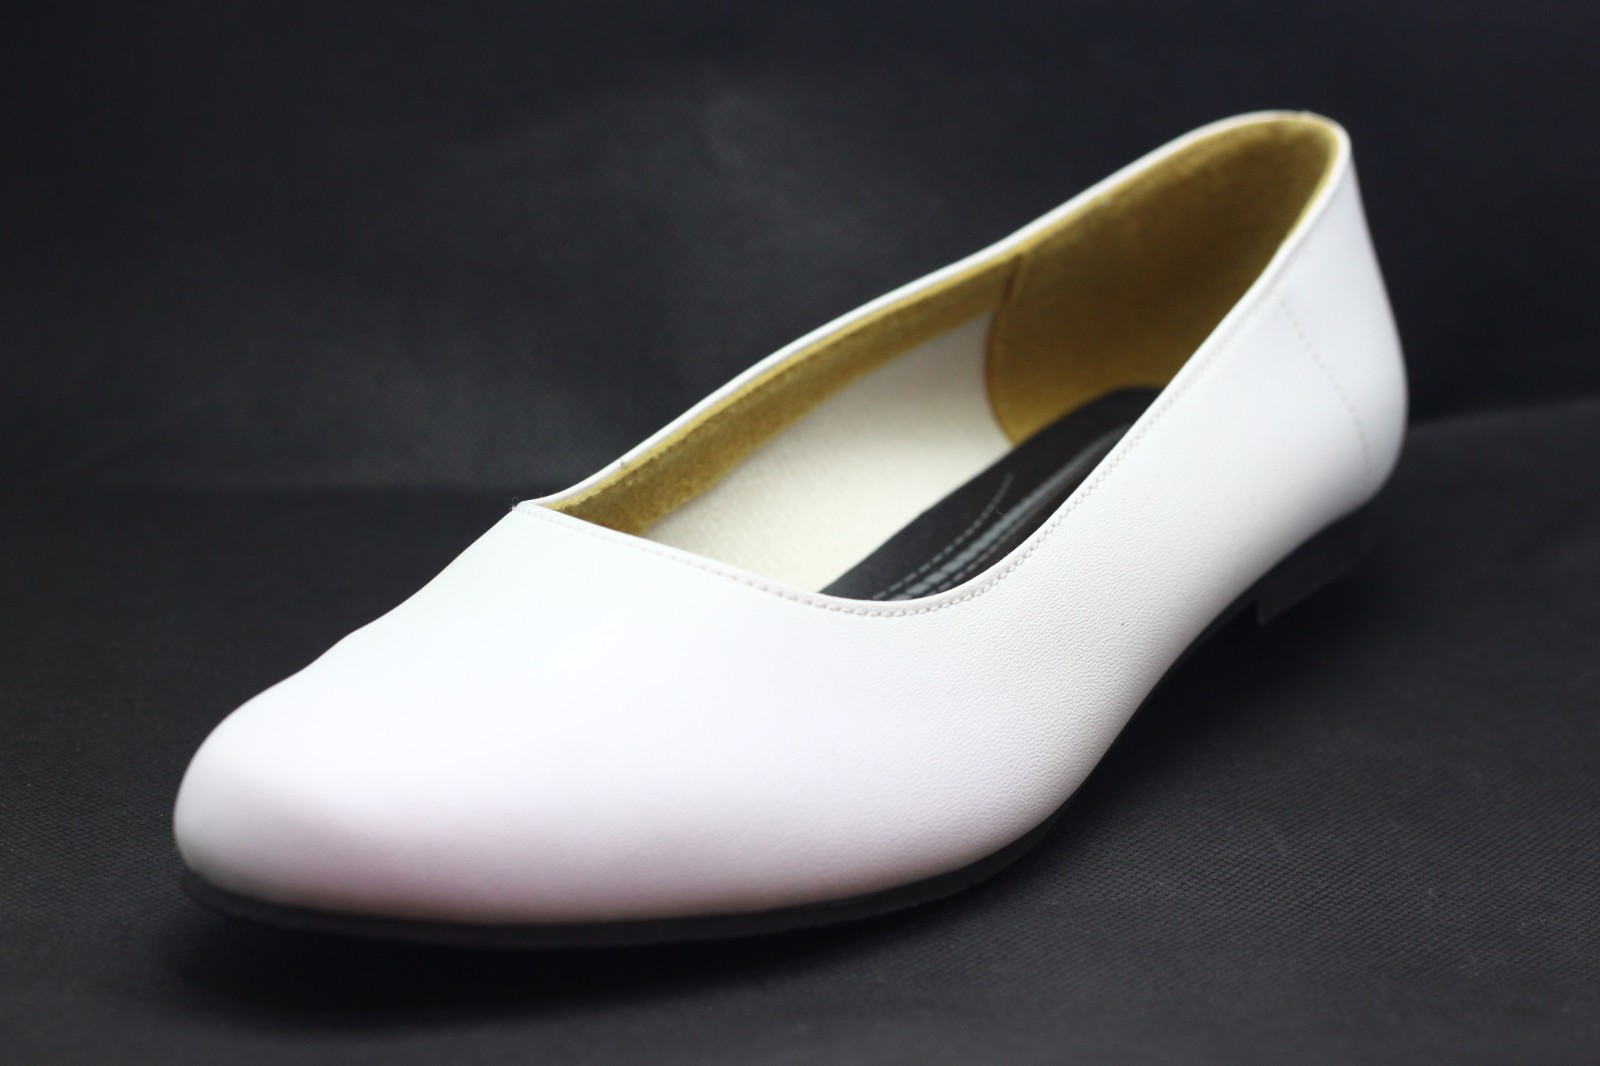 ladies shoes white colour